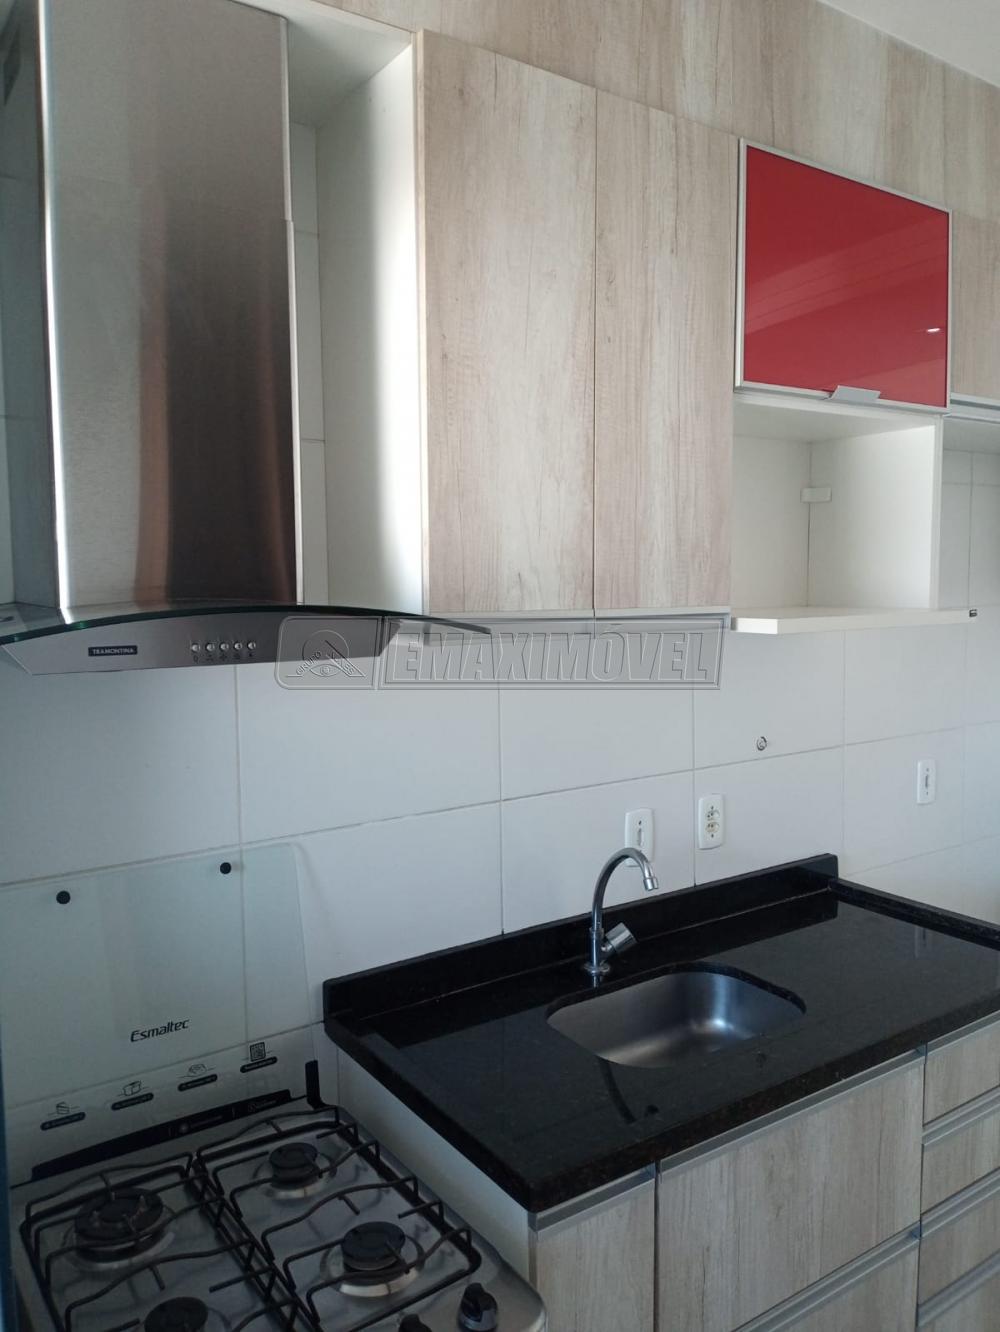 Alugar Apartamento / Padrão em Sorocaba R$ 890,00 - Foto 8